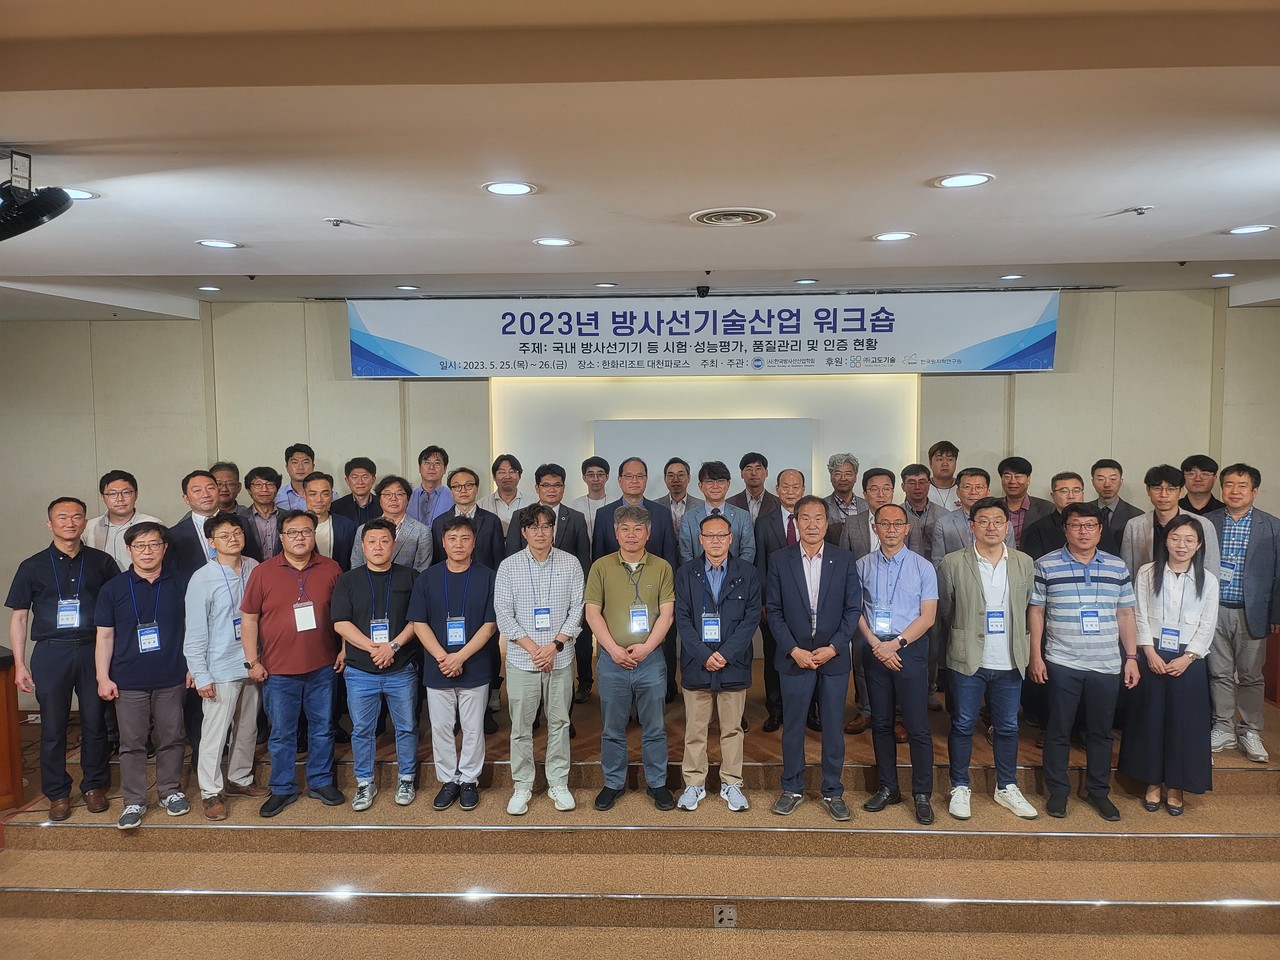 한국방사선산업학회가 개최한 ‘2023년 방사선기술산업워크숍’ 참가자들이 기념촬영을 하고 있다.   사진 = 방사선산업학회